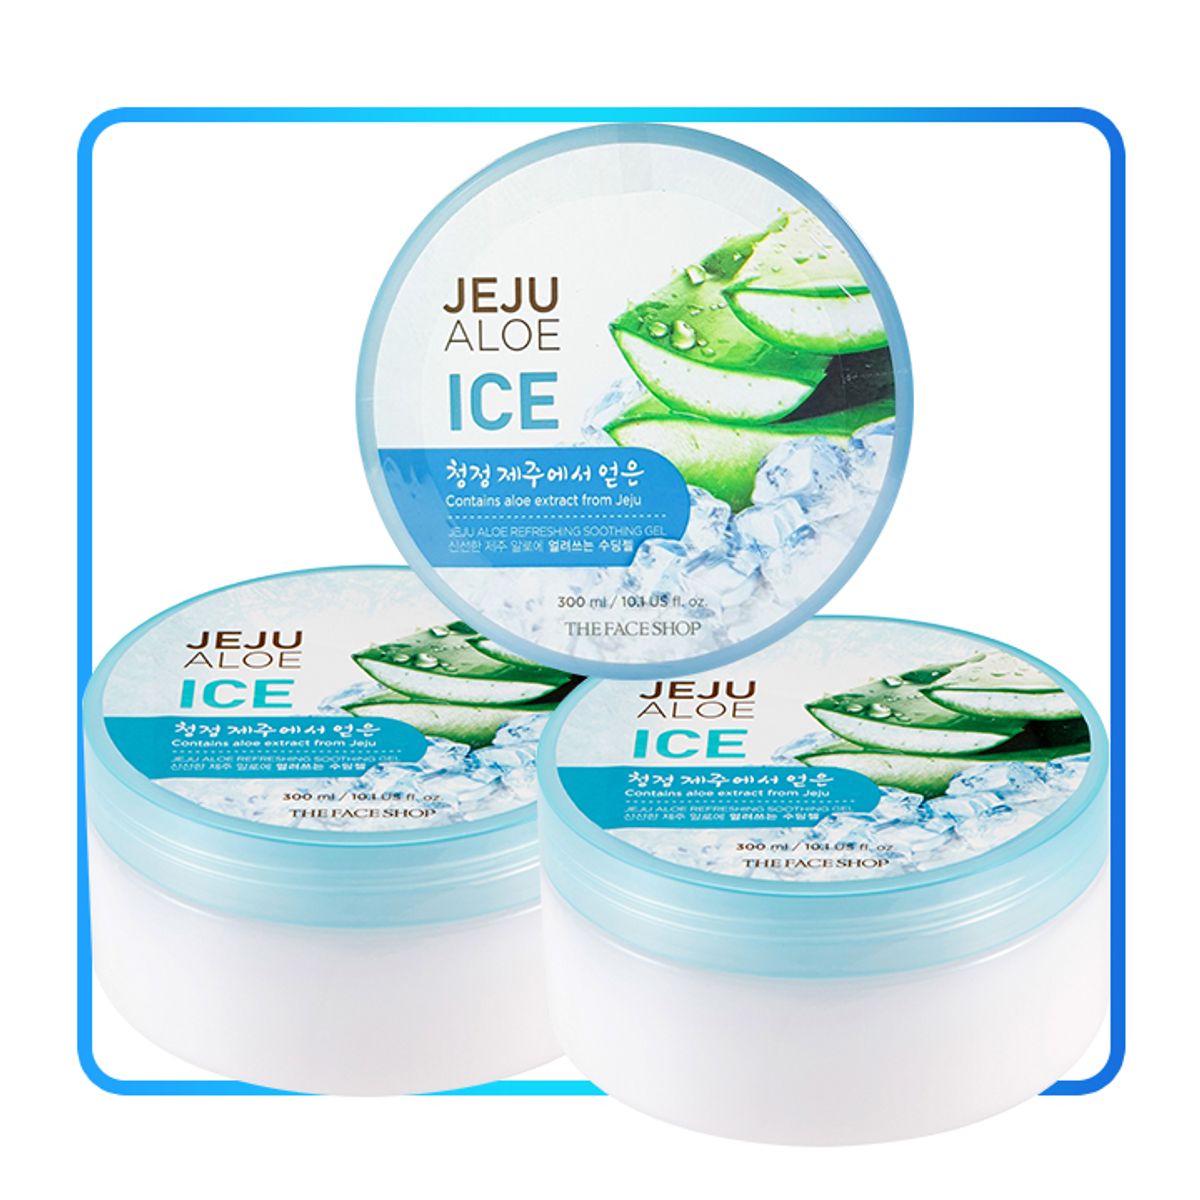 3x-gel-duong-da-nang-jeju-aloe-refreshing-soothing-gel-1